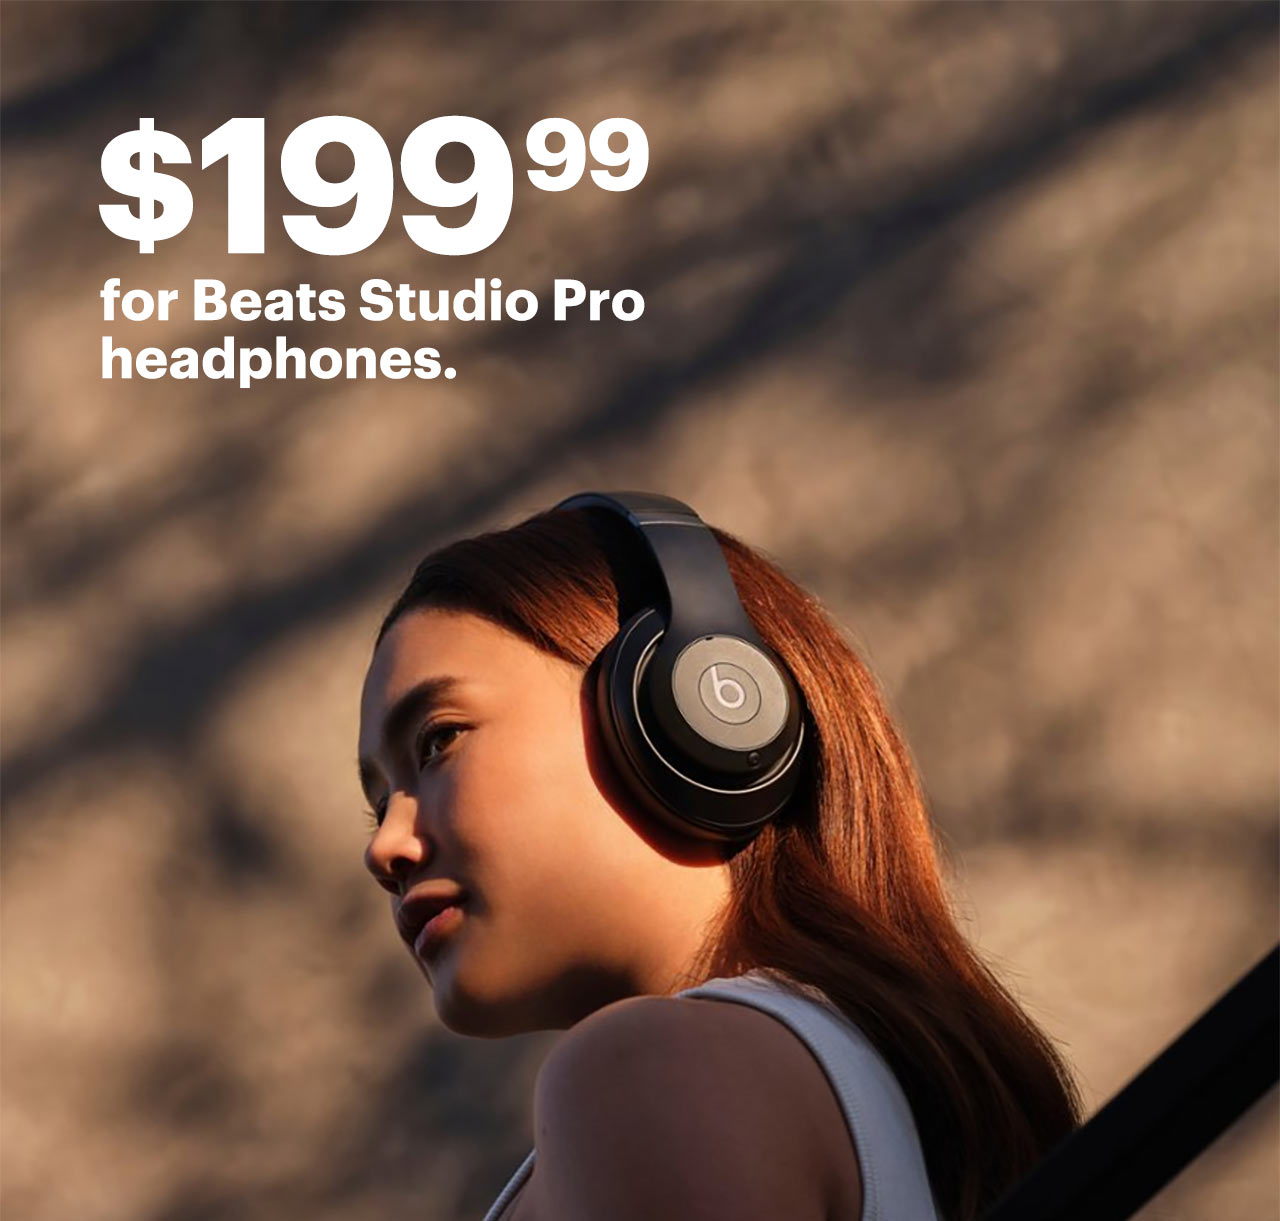 $199.99 for Beats Studio Pro headphones.